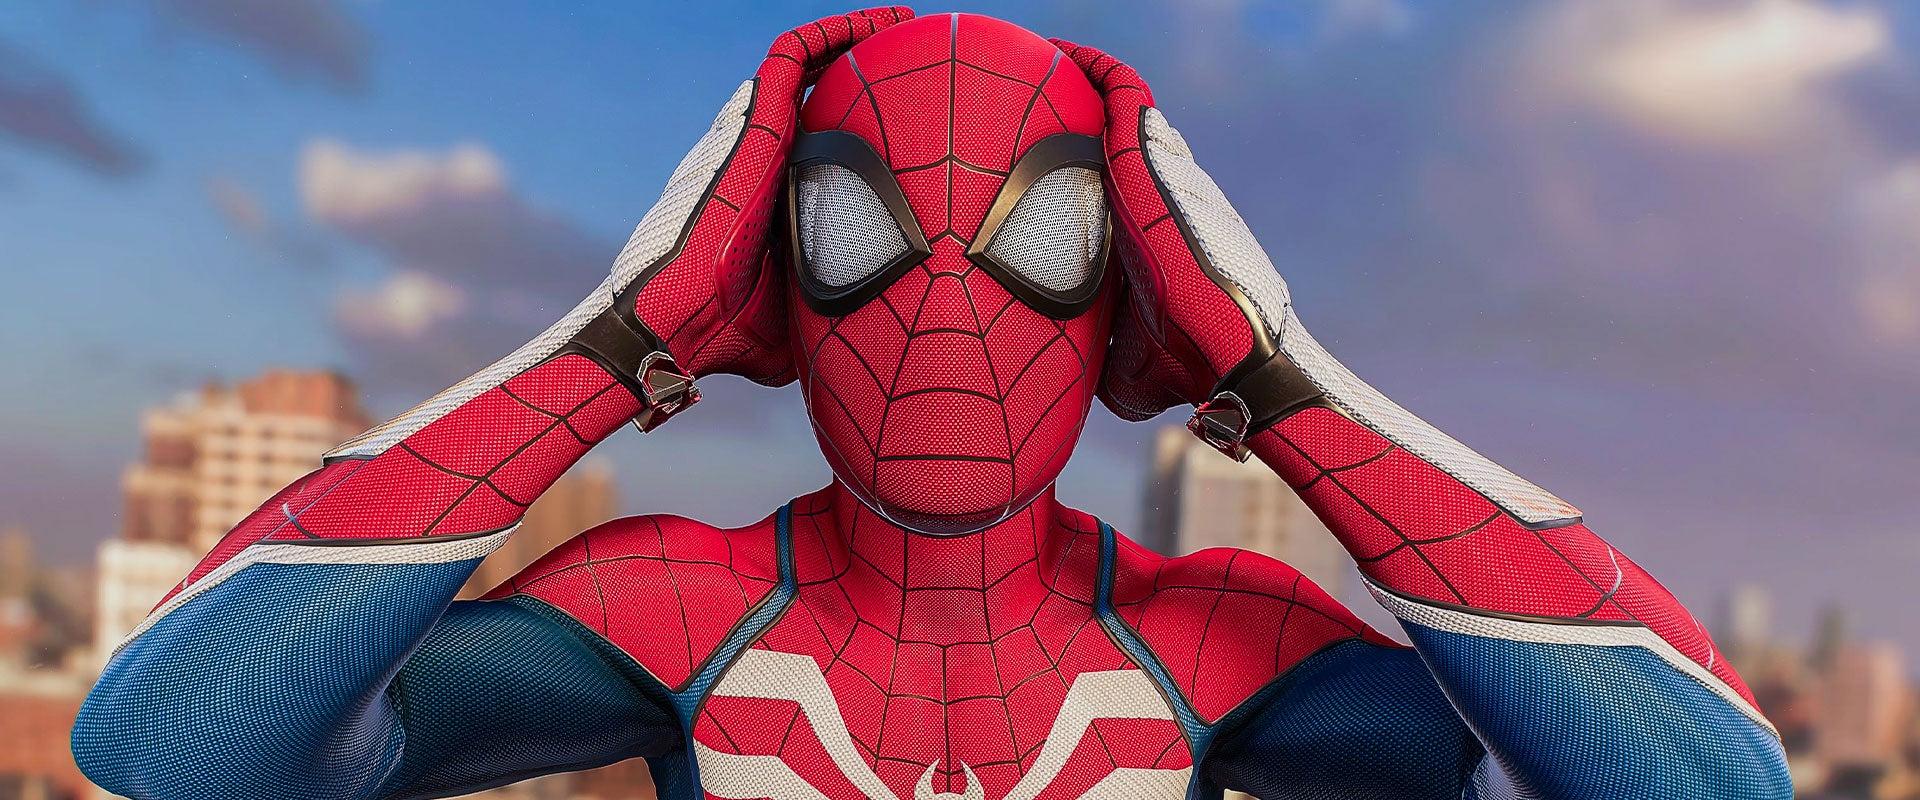 Egy hiba révén derült fény a Marvel's Spider-Man 2 első DLC-karaktere